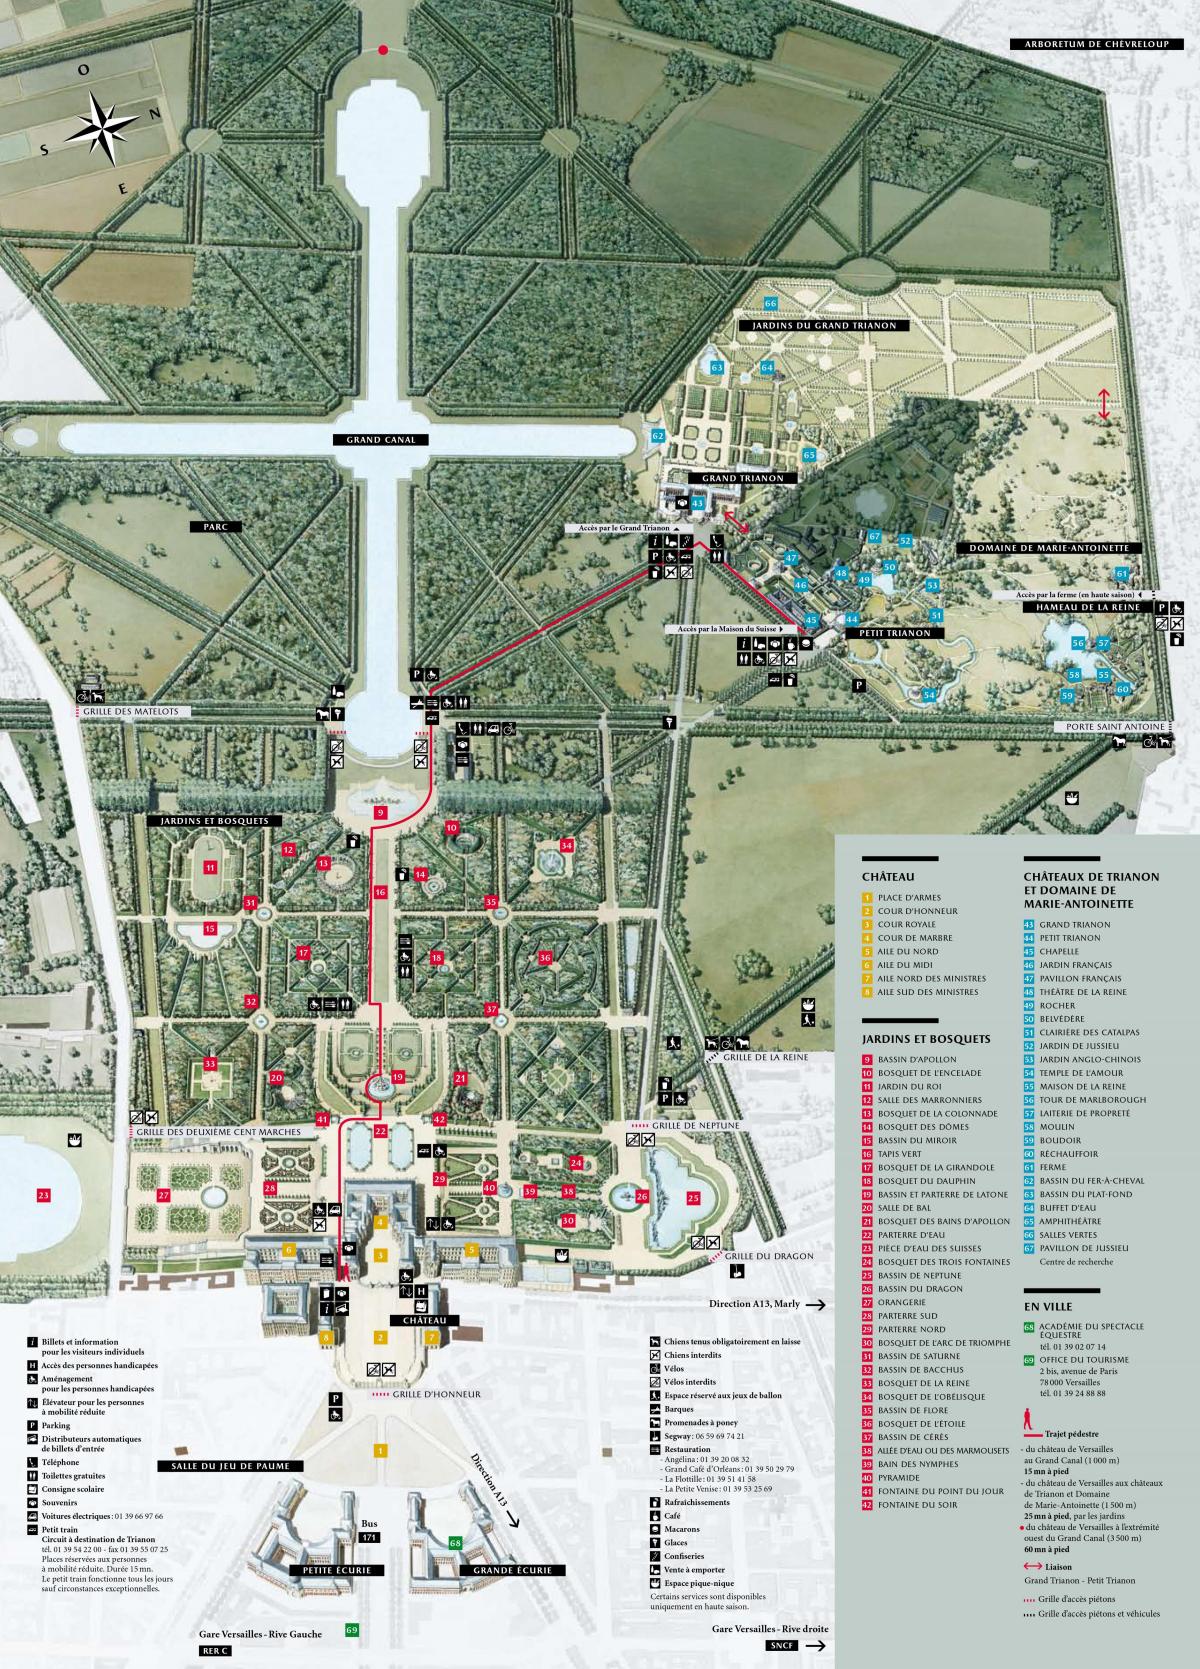 Mapa do Palacio de Versalles